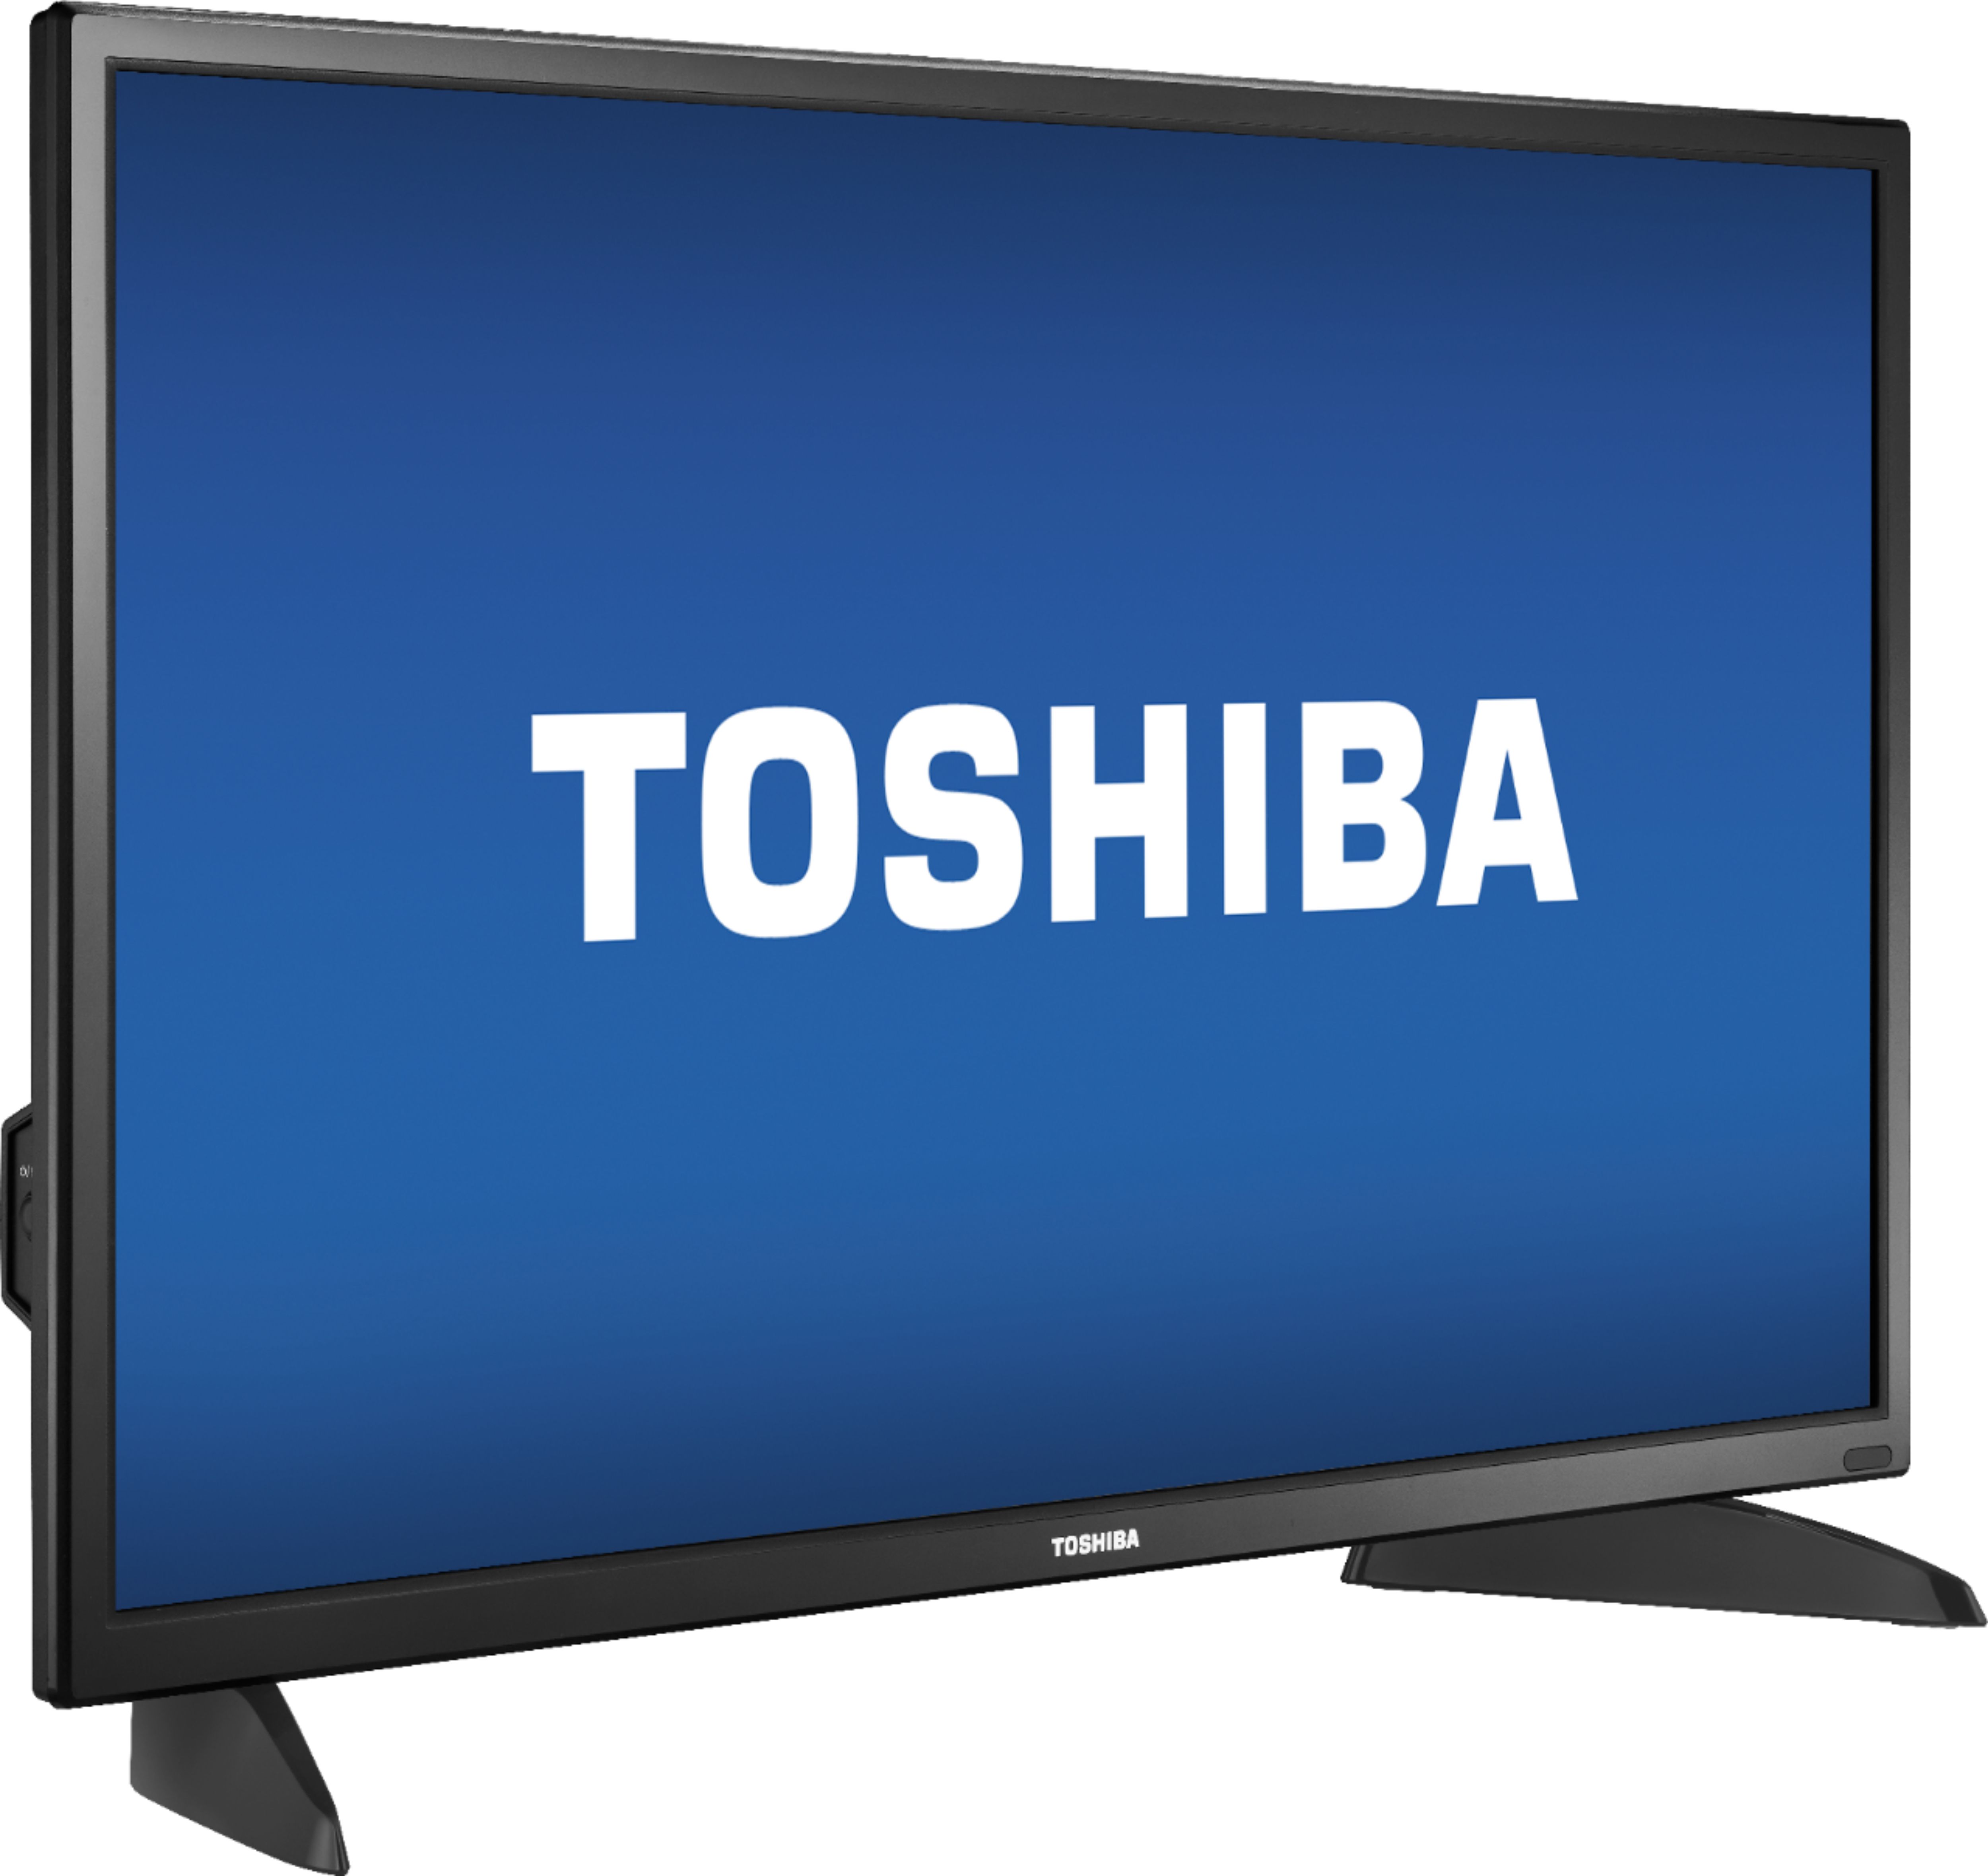 Angle View: Toshiba - N300 4TB Internal SATA NAS Hard Drive for Desktops